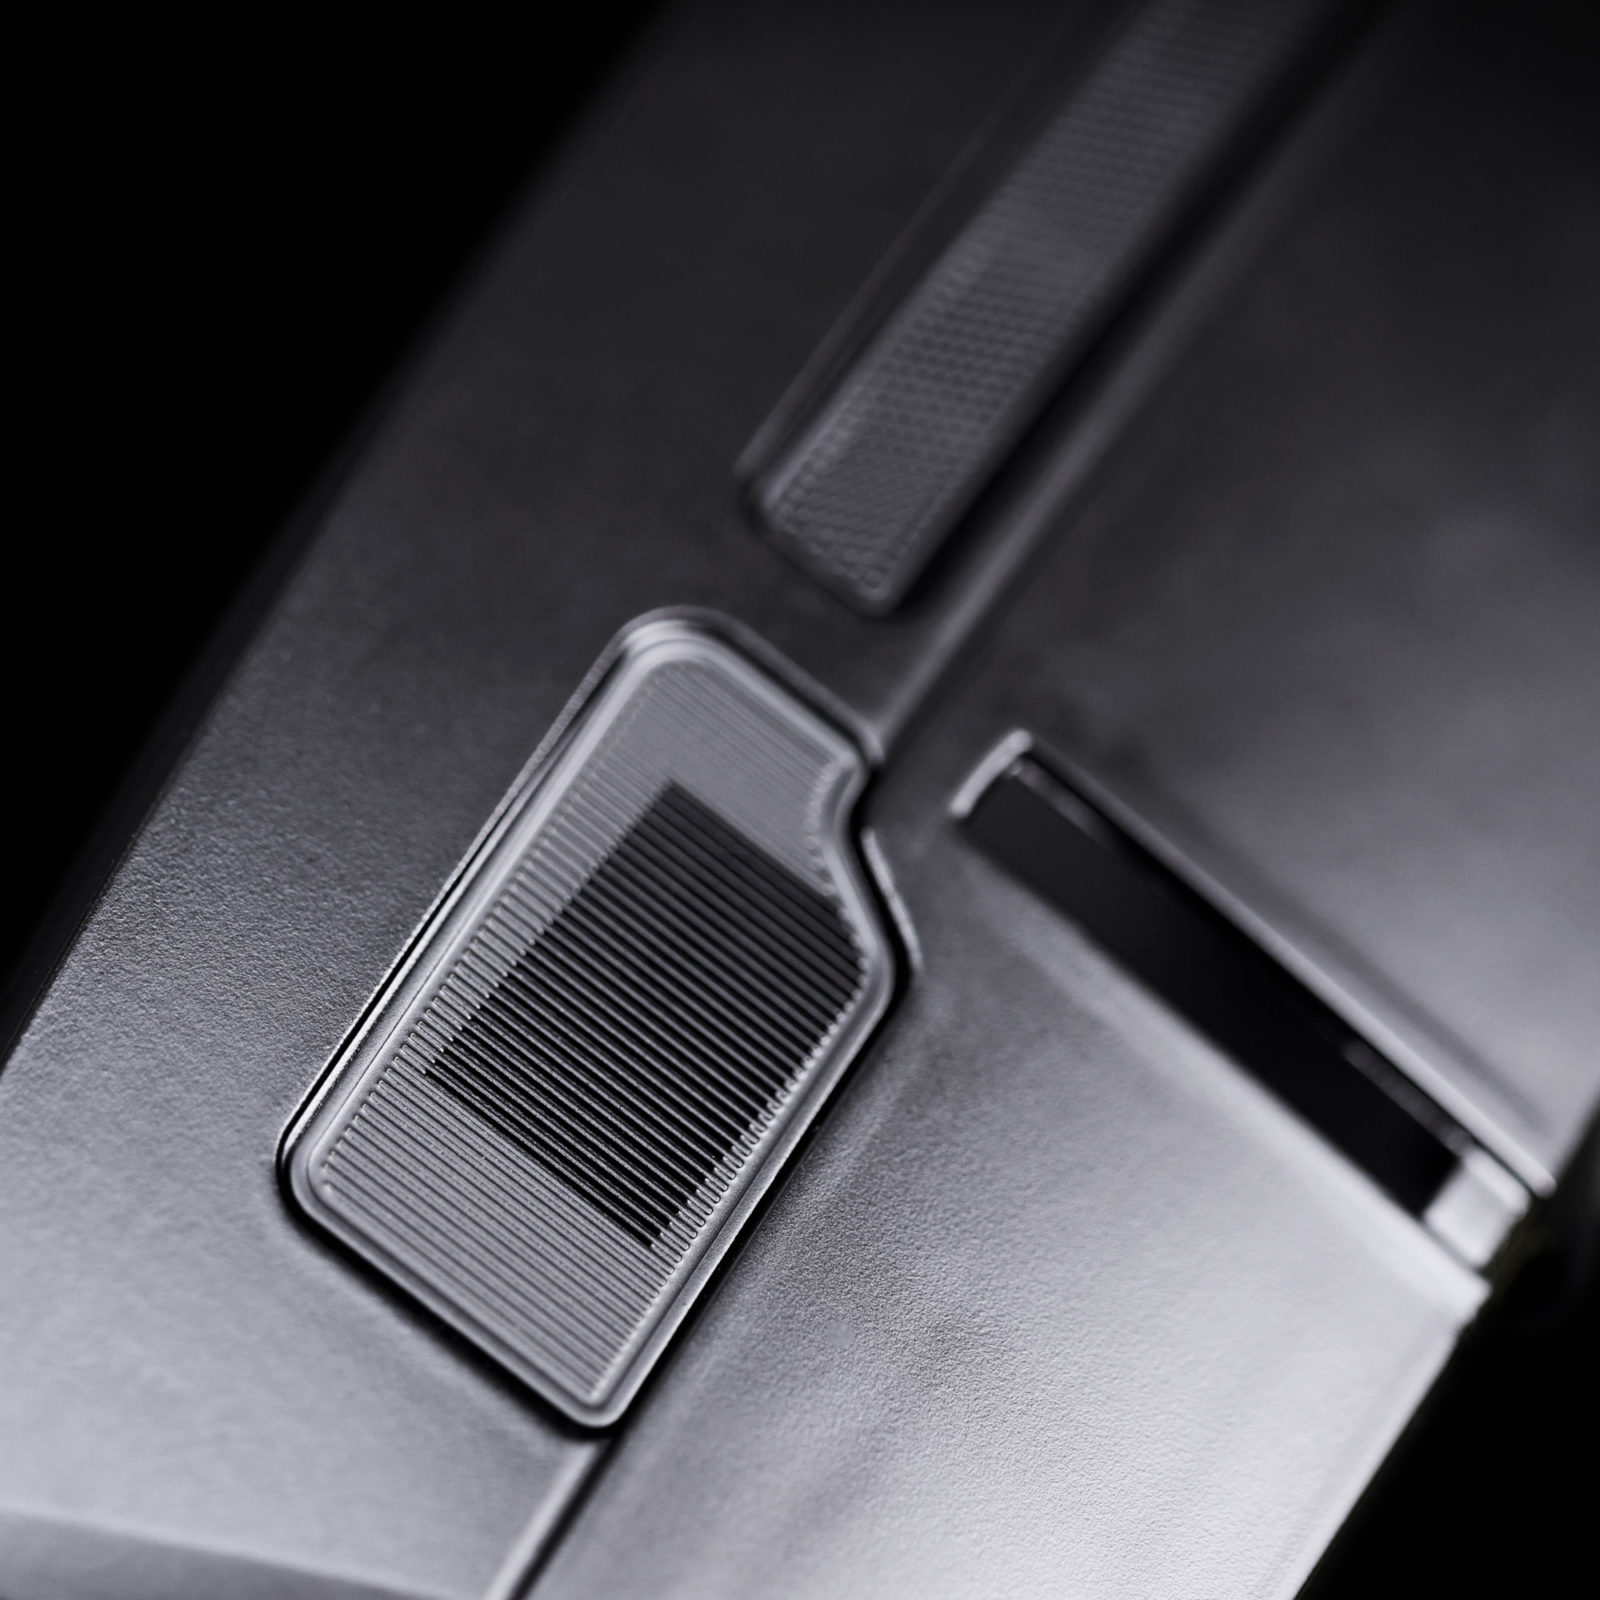 Dashboard metal speaker grille mod on KITT model